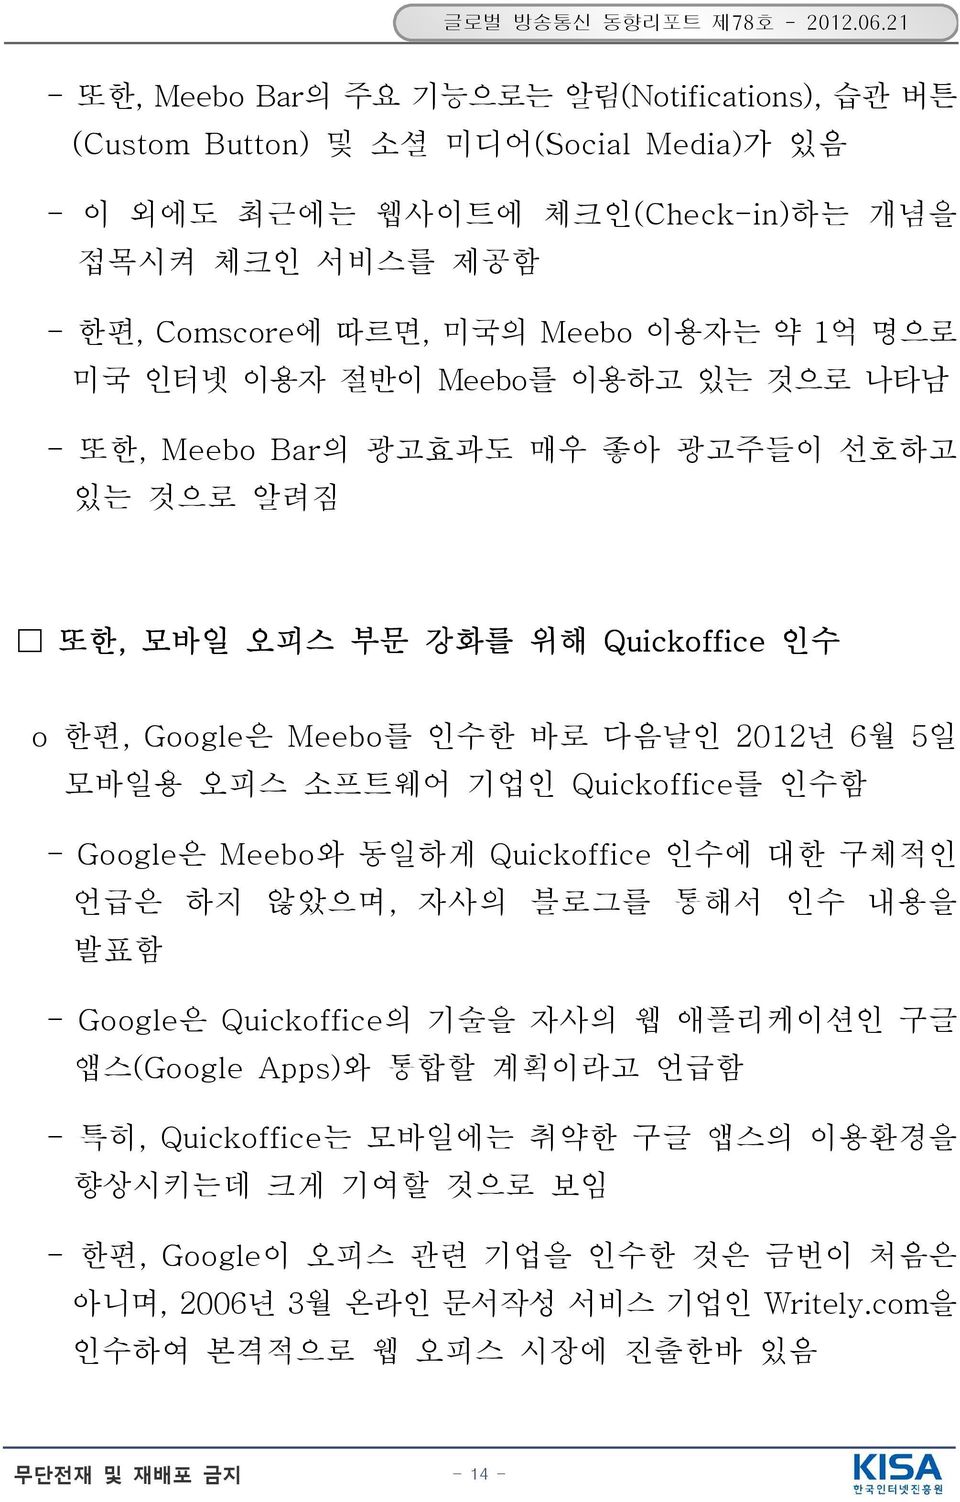 약 1억 명으로 미국 인터넷 이용자 절반이 Meebo 를 이용하고 있는 것으로 나타남 - 또한, Meebo Bar의 광고효과도 매우 좋아 광고주들이 선호하고 있는 것으로 알려짐 또한, 모바일 오피스 부문 강화를 위해 Quickoffice 인수 o 한편, Google은 Meebo를 인수한 바로 다음날인 2012년 6월 5일 모바일용 오피스